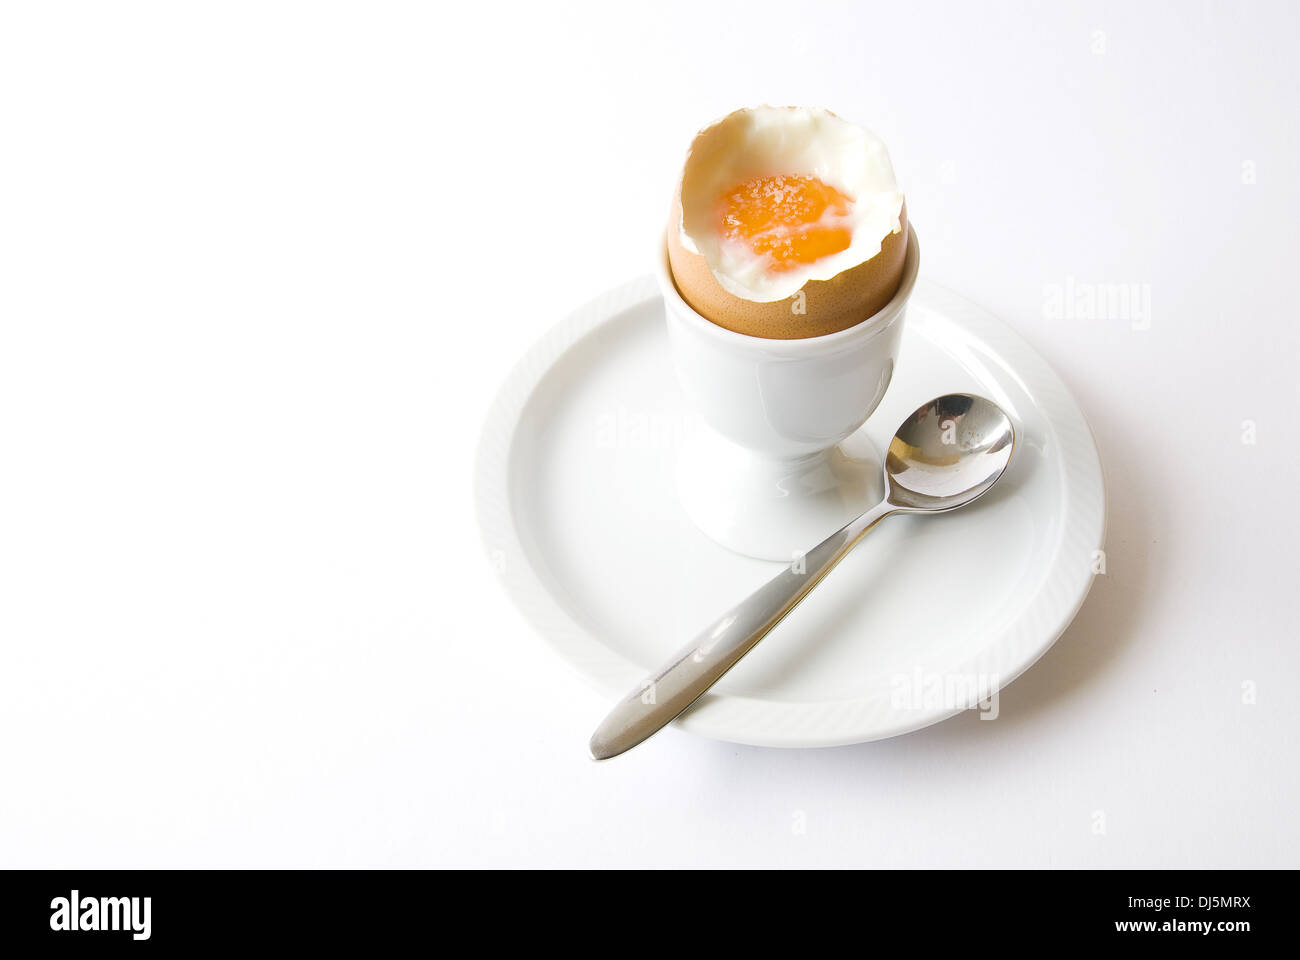 eggs for breakfast Stock Photo